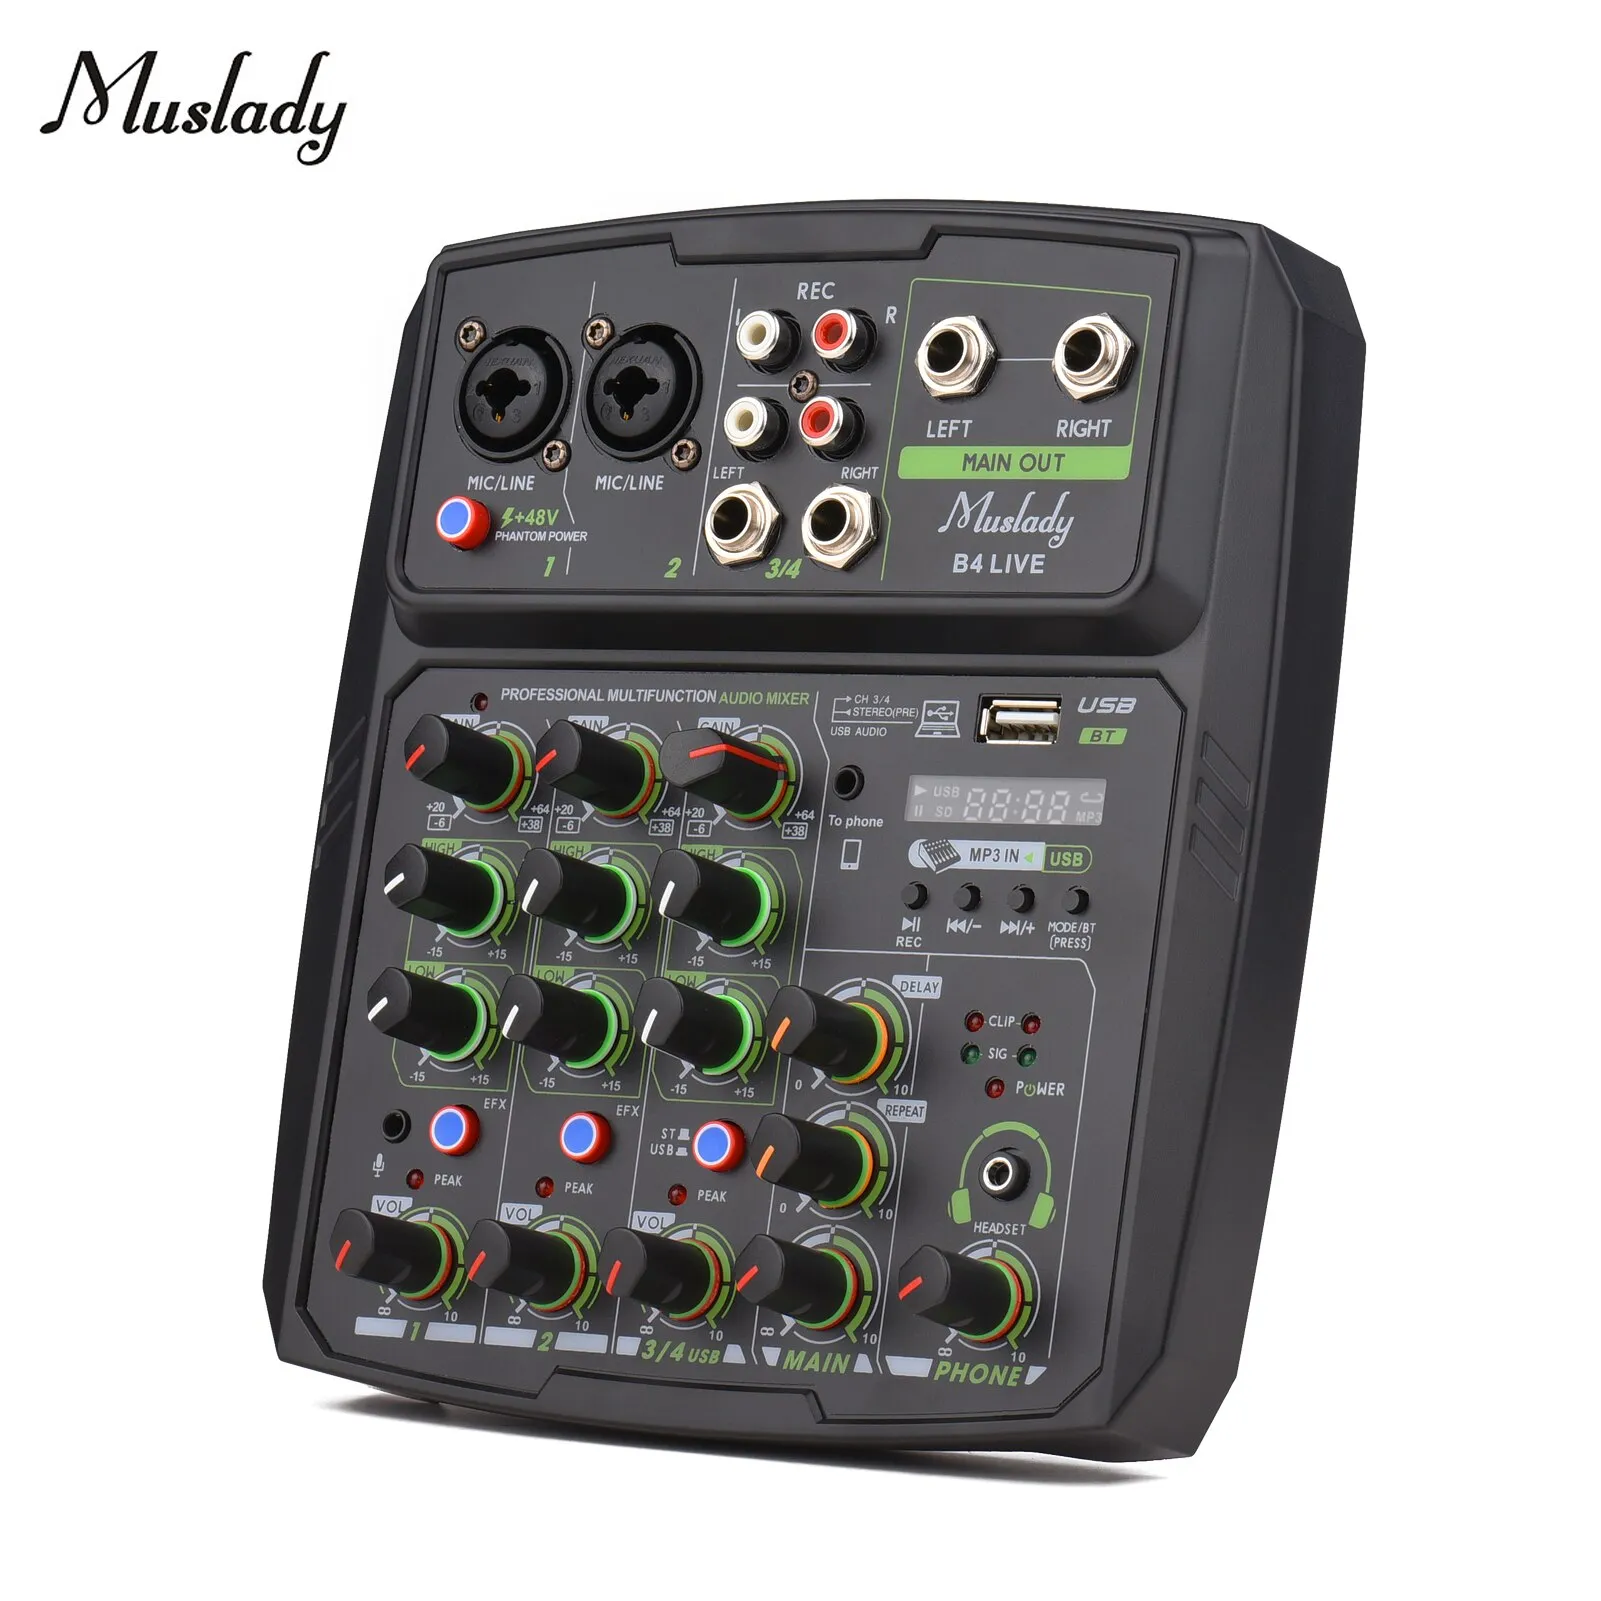 Console mixer audio a 4 canali Muslady Schermo LED Scheda audio incorporata con controllo di ripetizione Funzione di registrazione con alimentazione